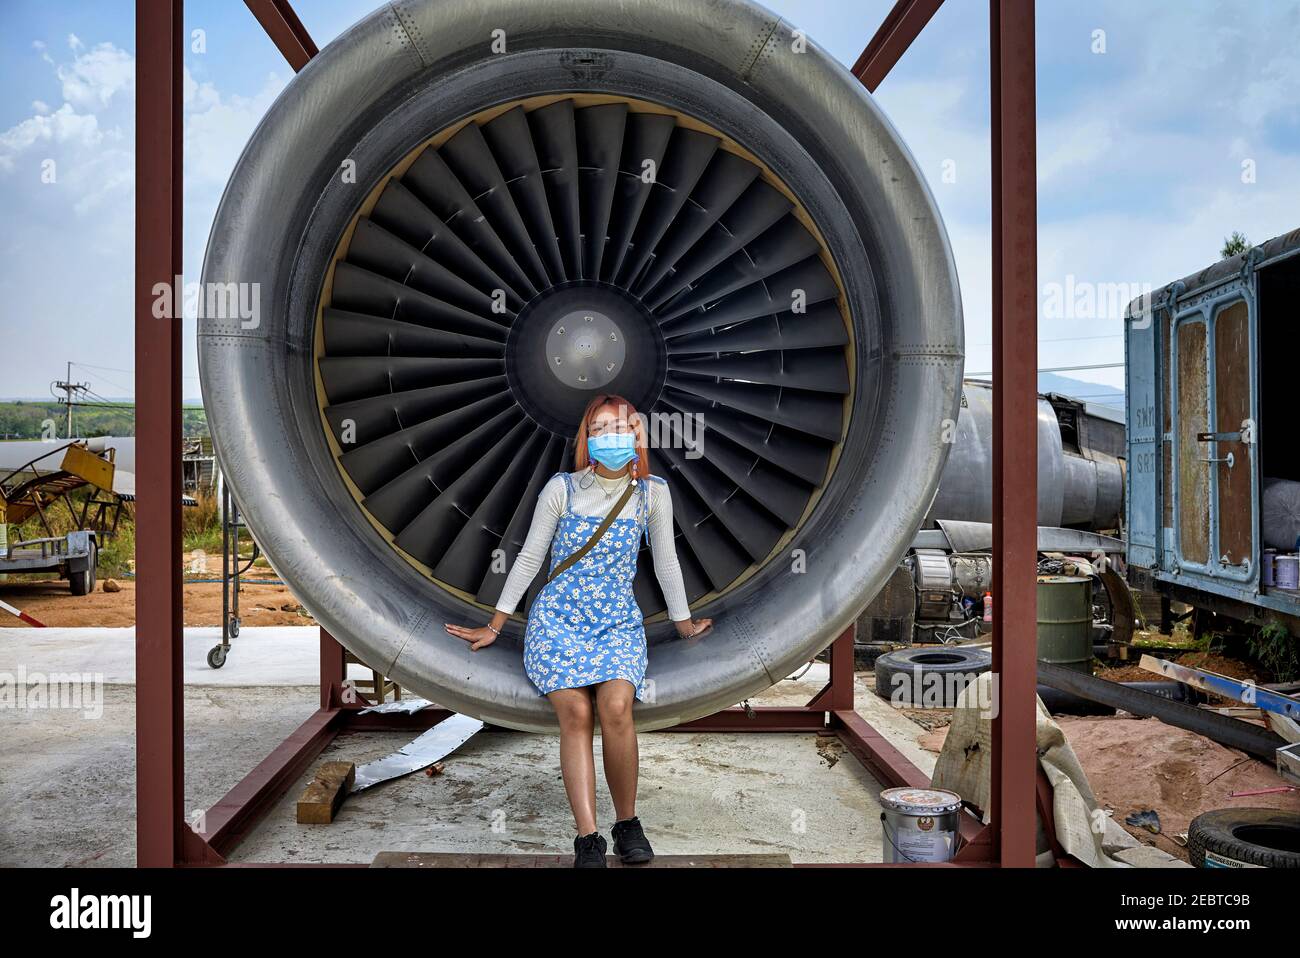 Mädchen saß in einem Jet Turbine Motor Bereitstellung menschliche Größe Vergleich Stockfoto